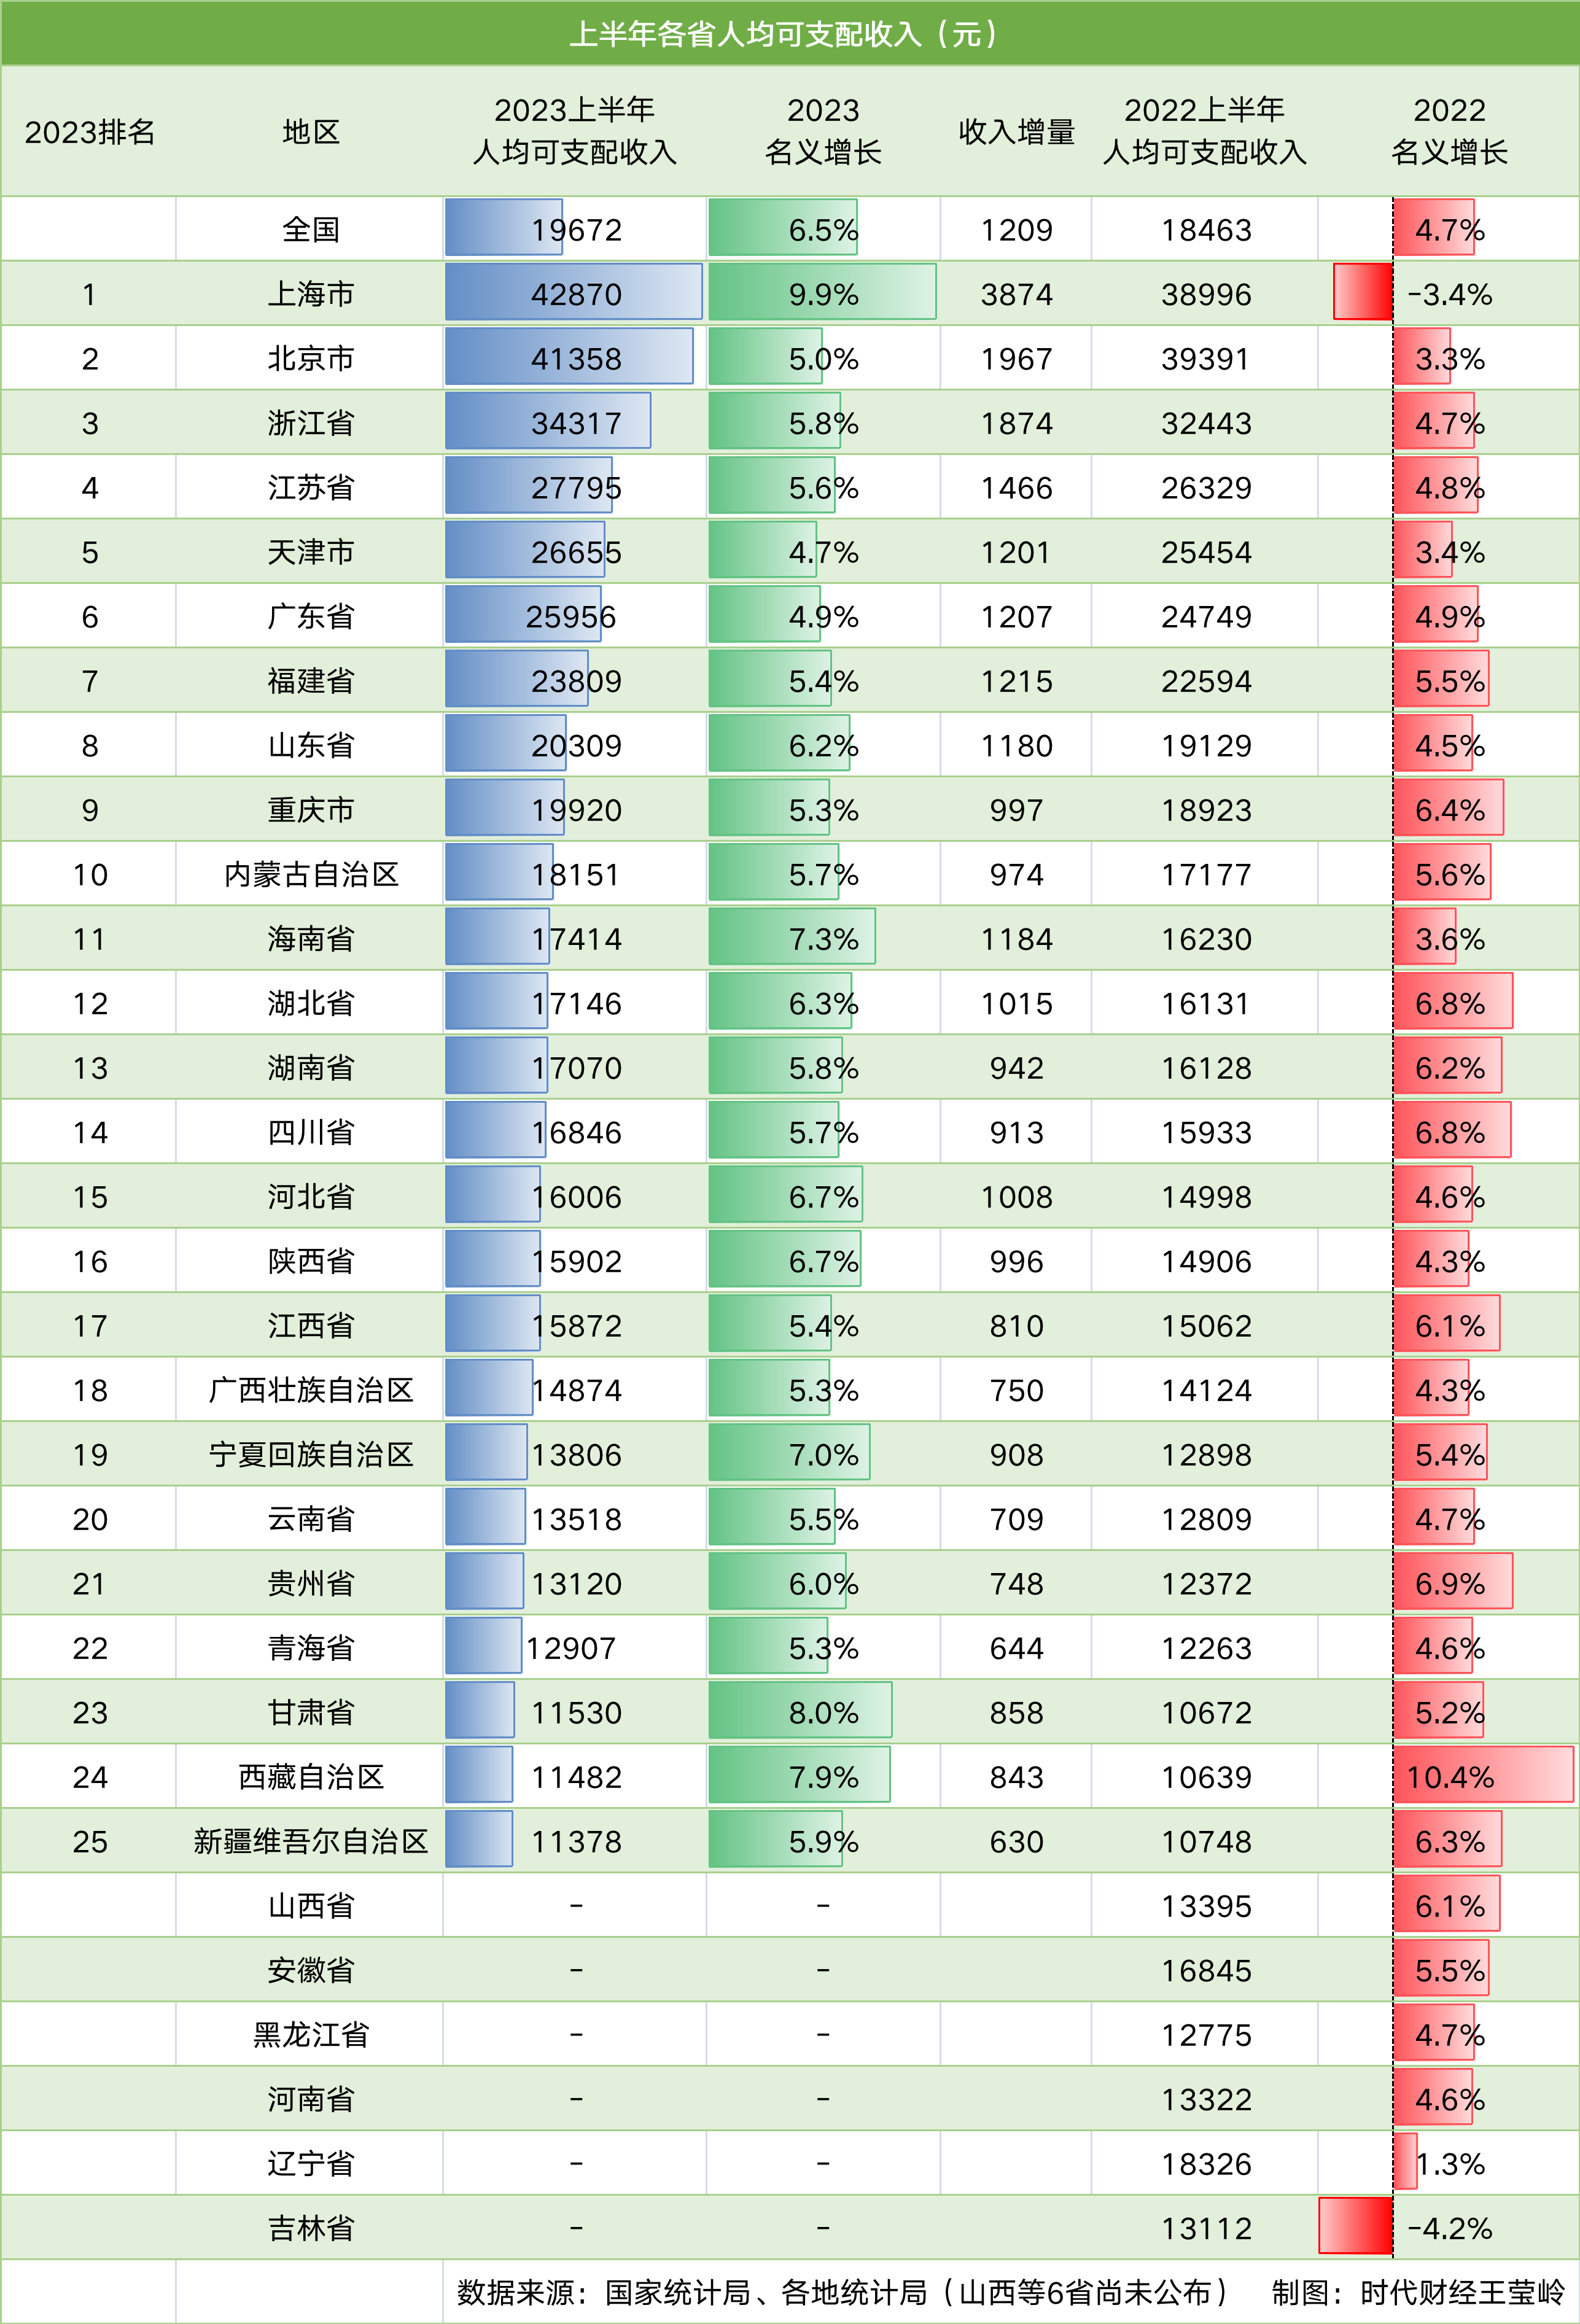 哪里的人最有钱 中国哪里的人最有钱